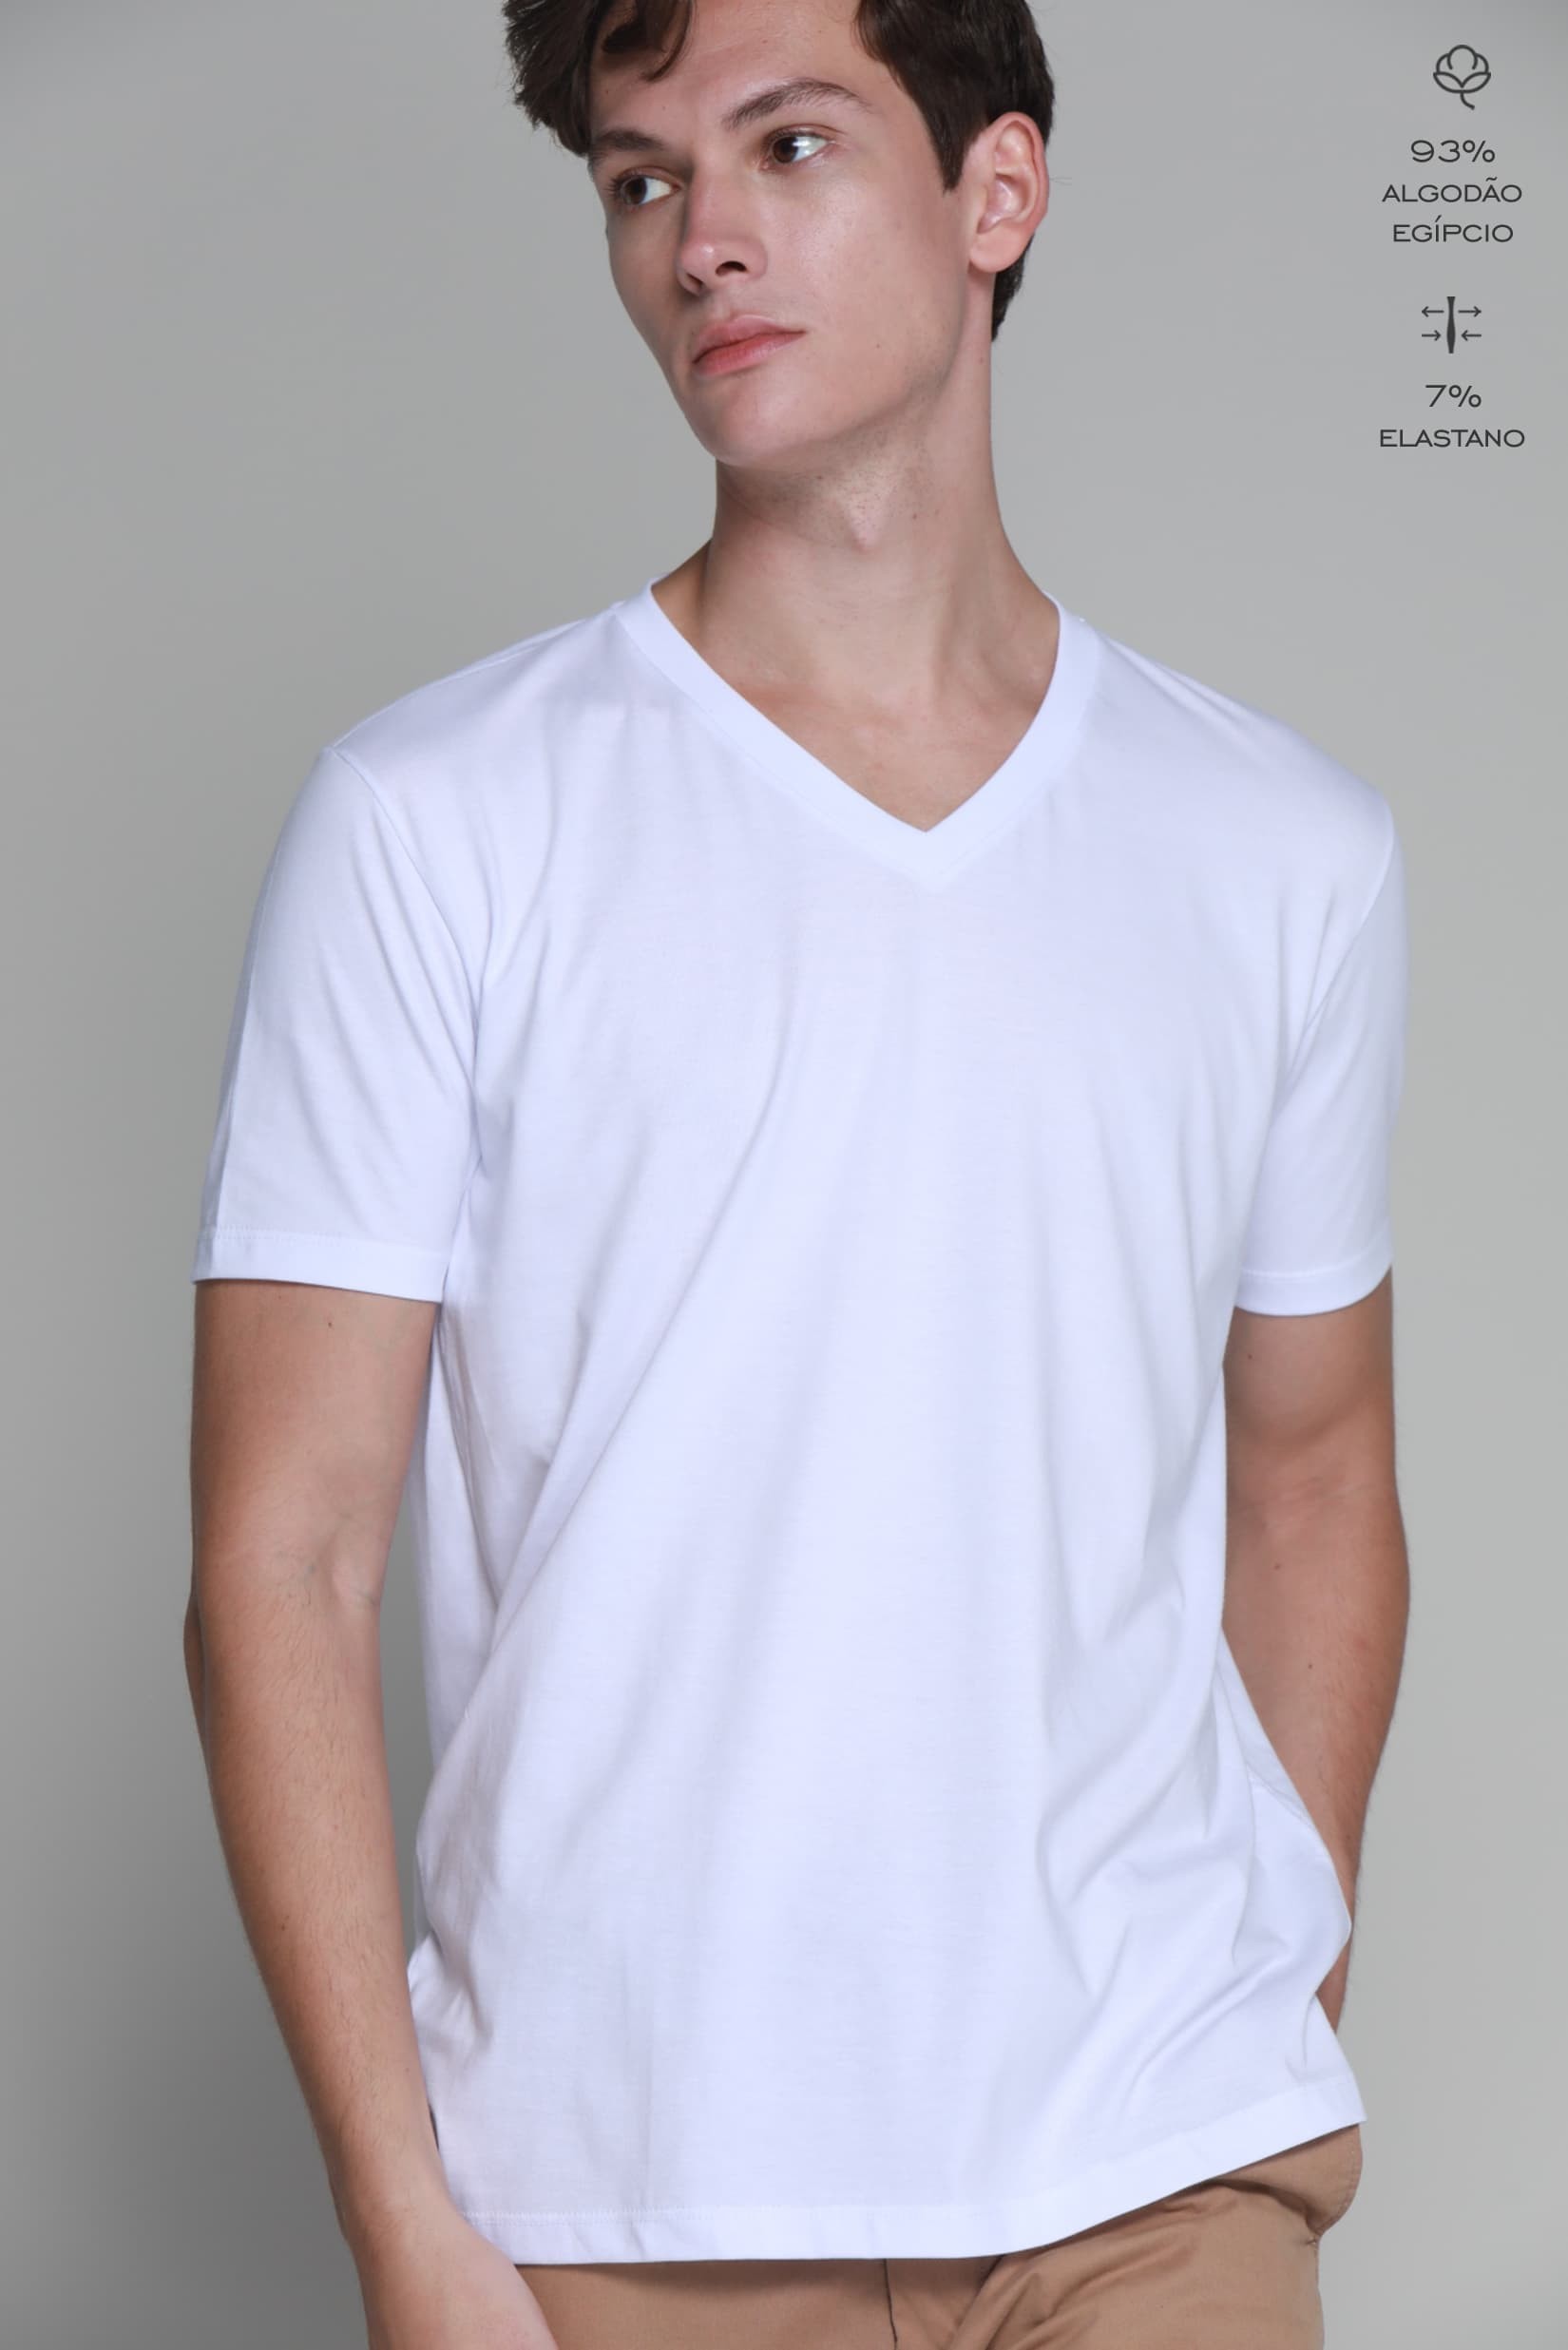 Camiseta Básica Algodão Egípcio Gola V Branca - W.Shirt